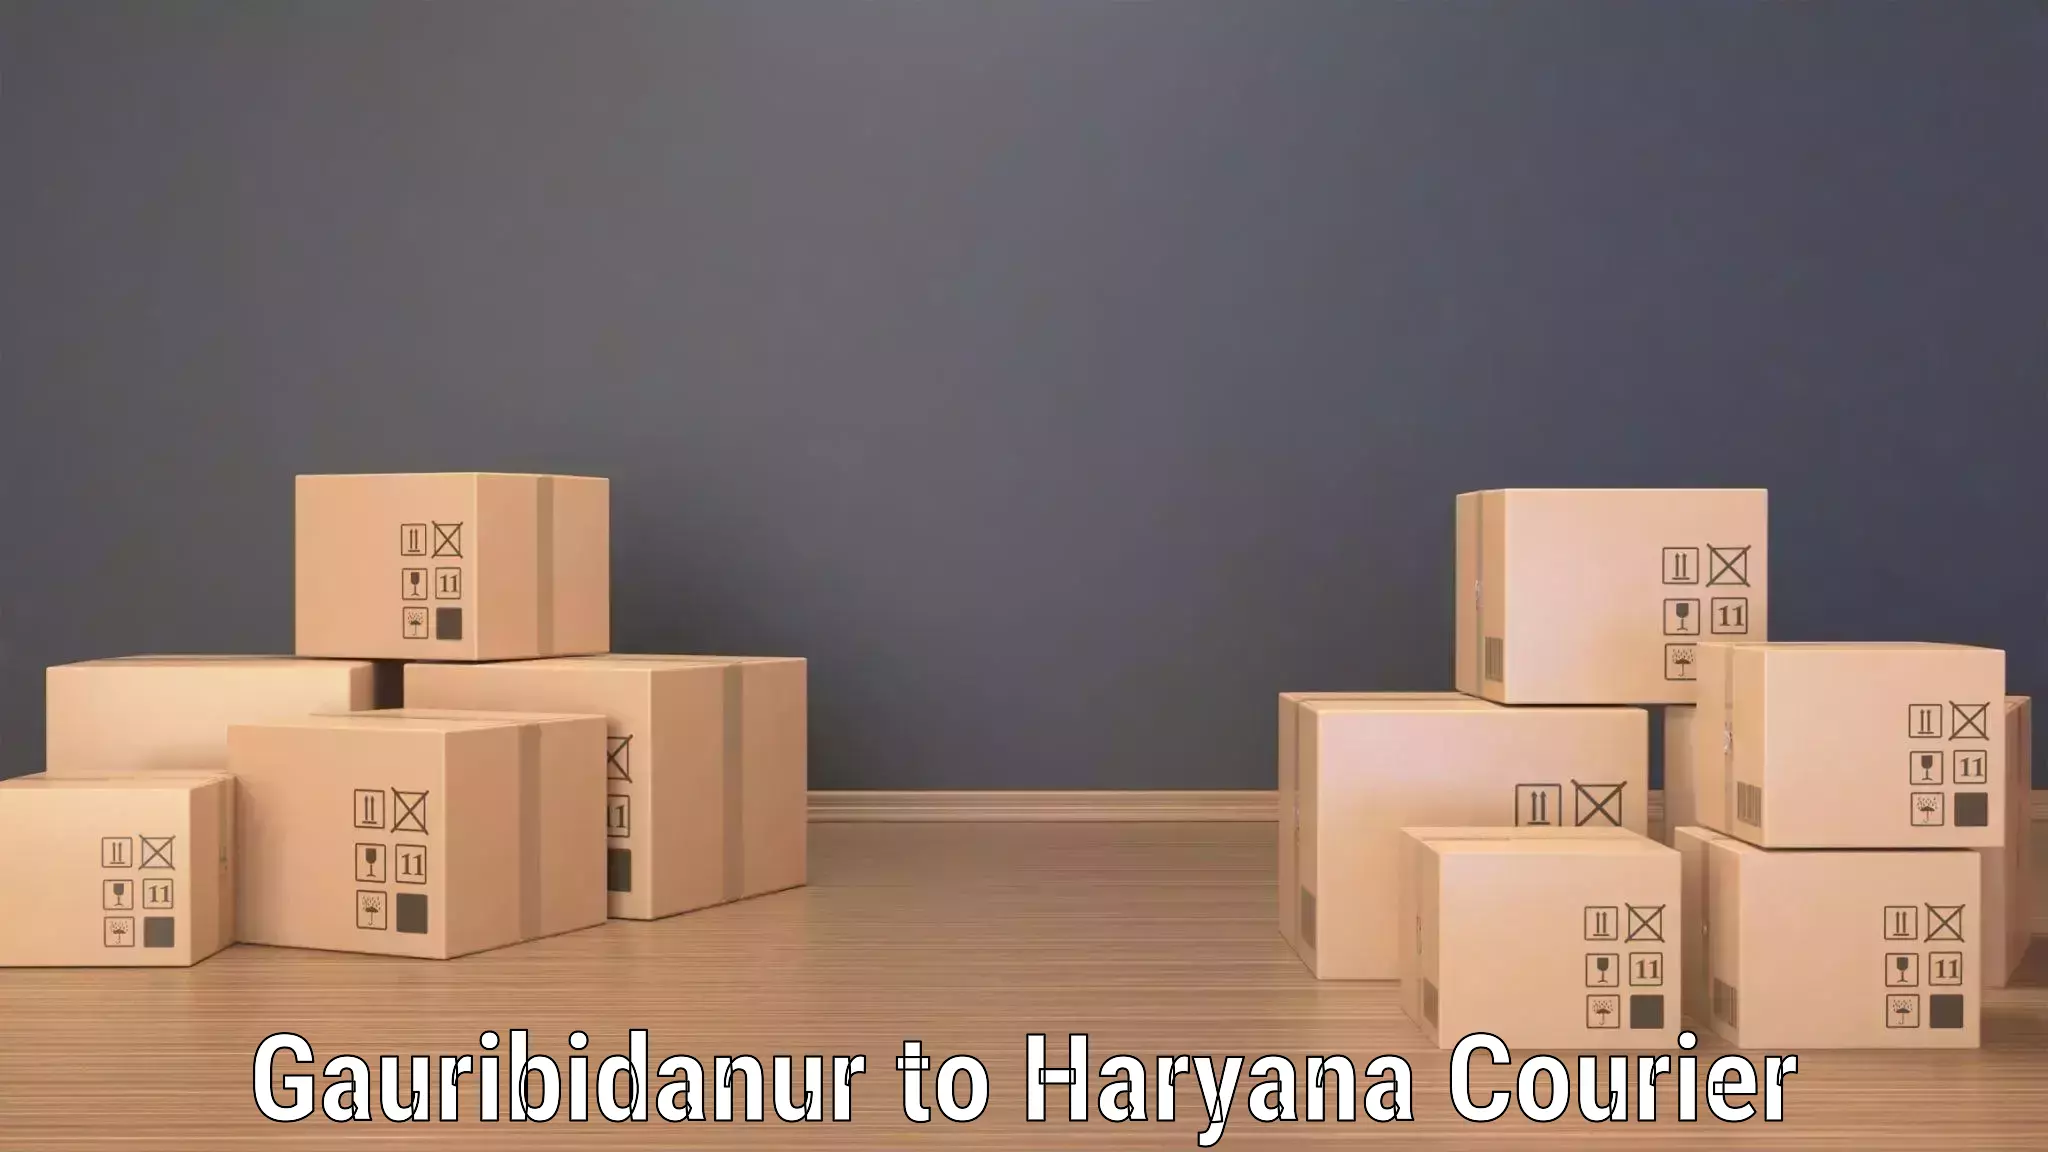 Next day courier Gauribidanur to Hansi